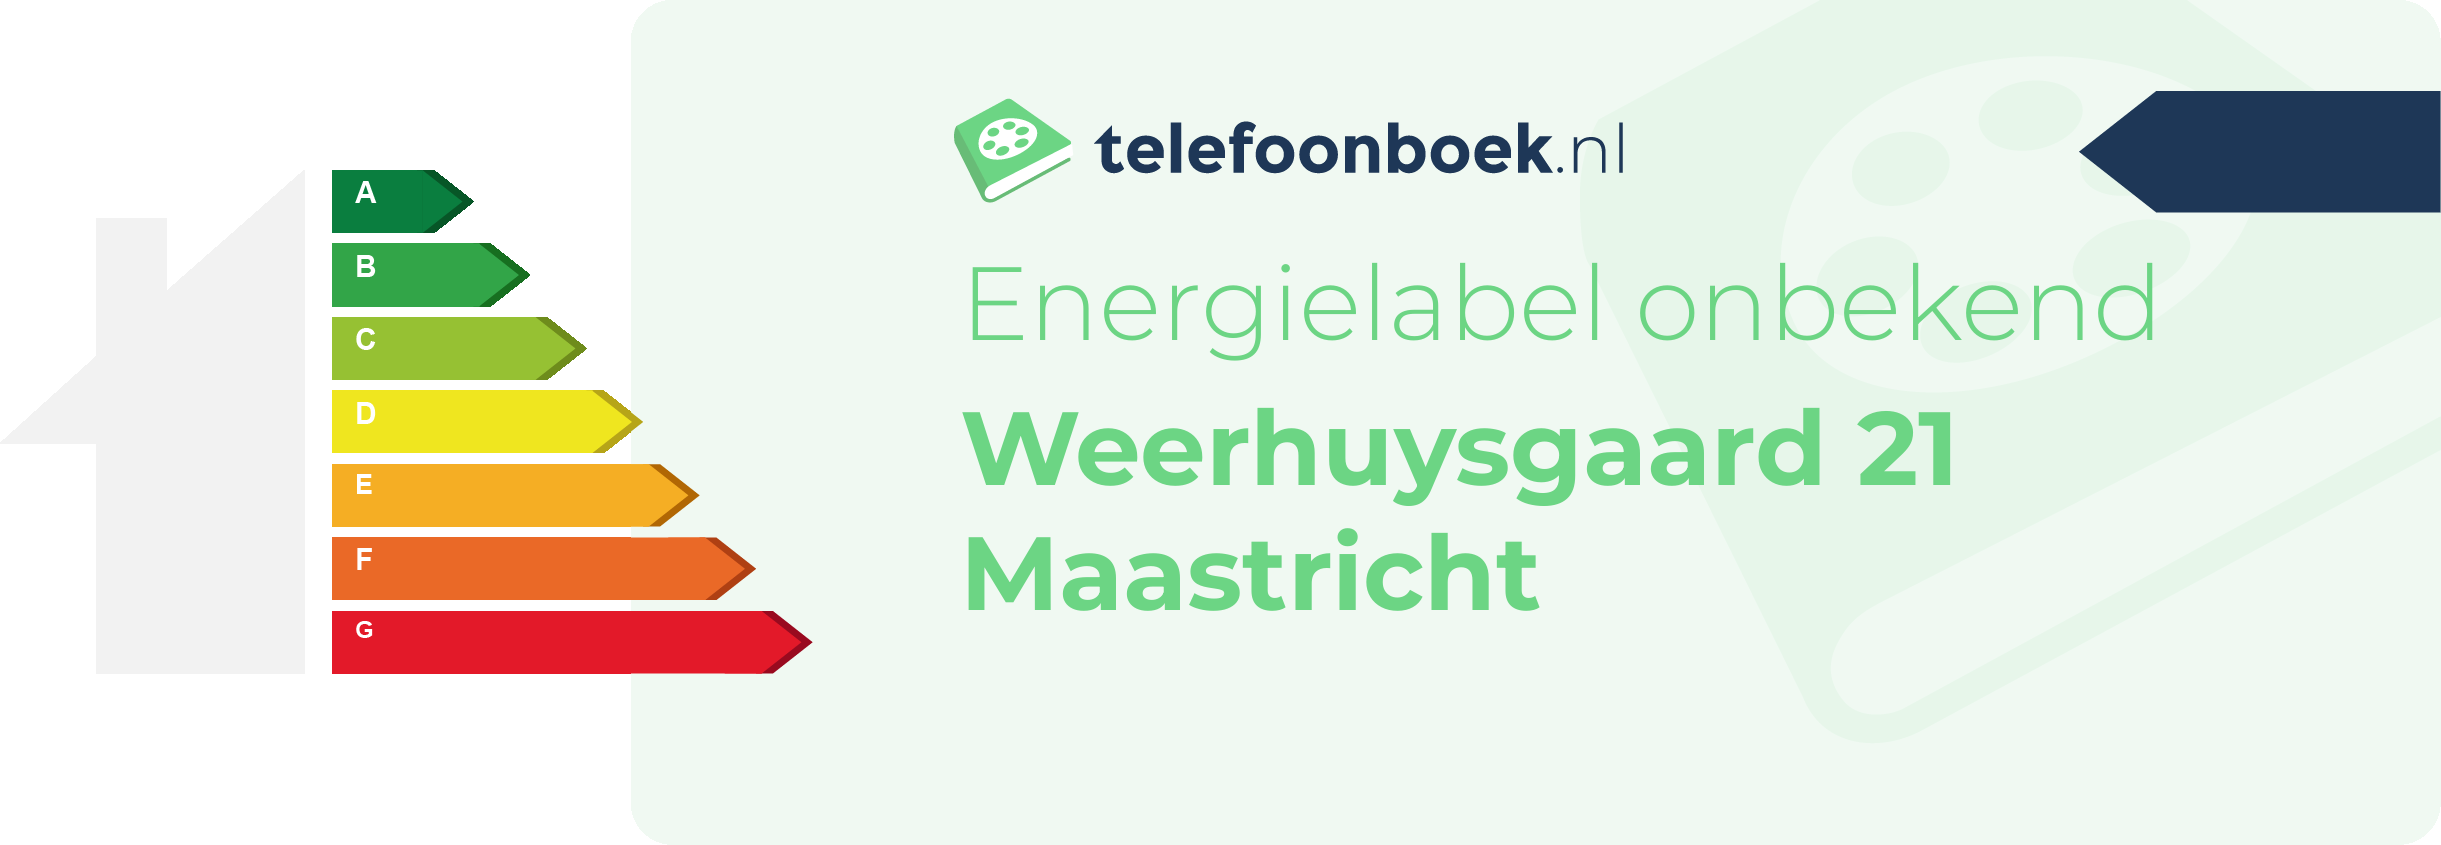 Energielabel Weerhuysgaard 21 Maastricht